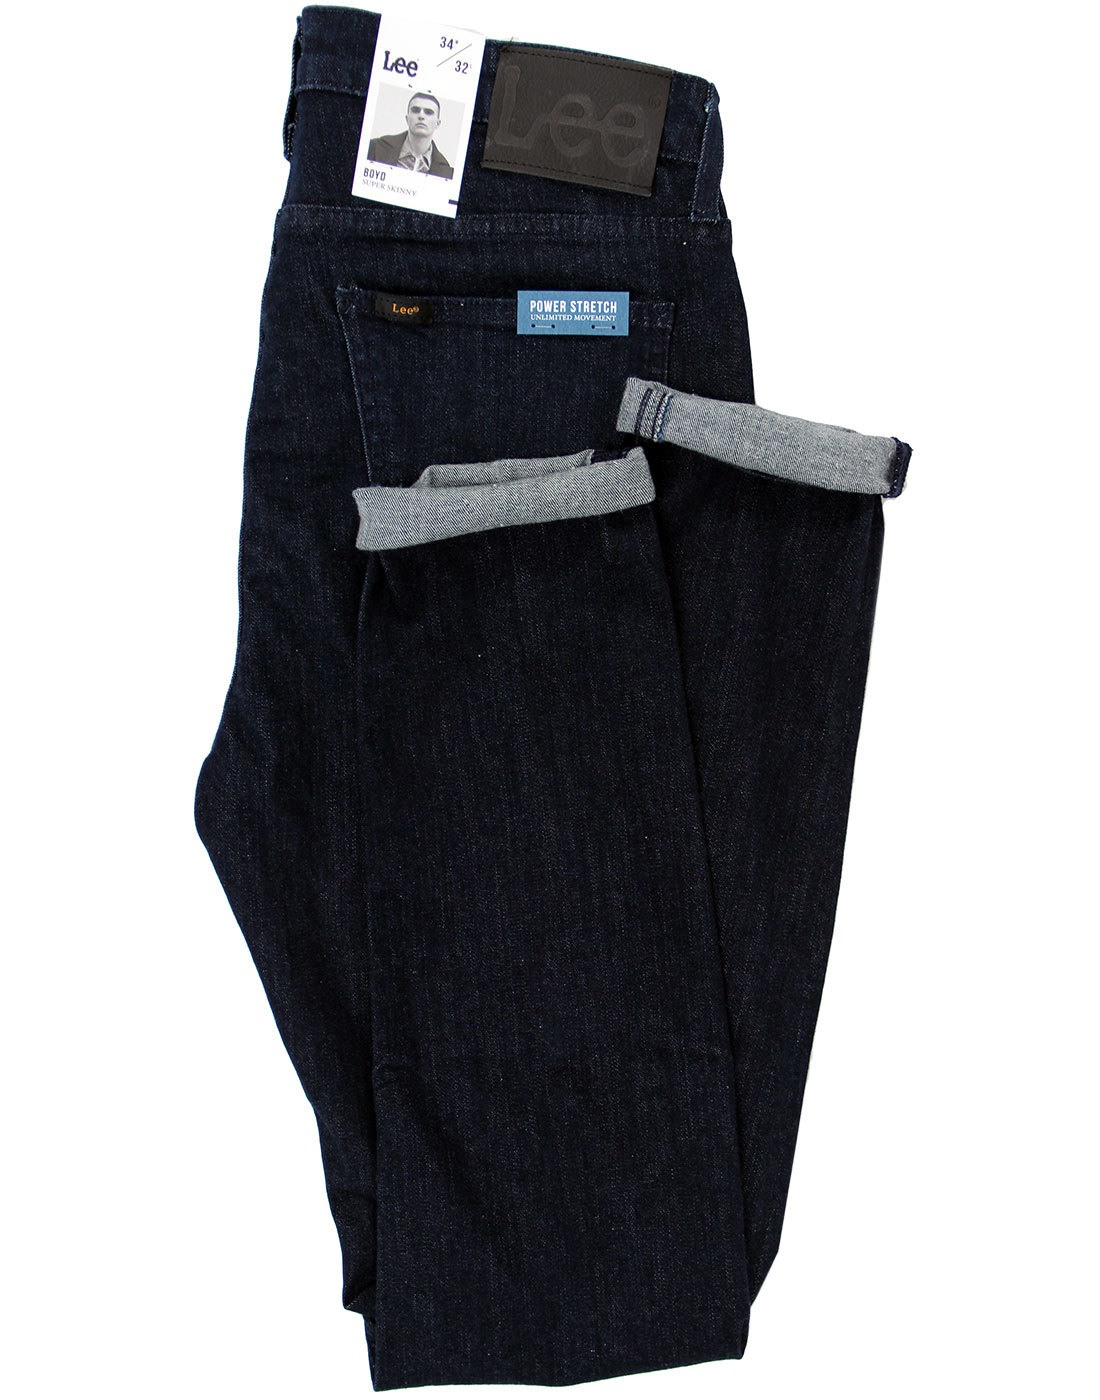 LEE Boyd Retro Mod Power Stretch Super Skinny Jeans in One Wash